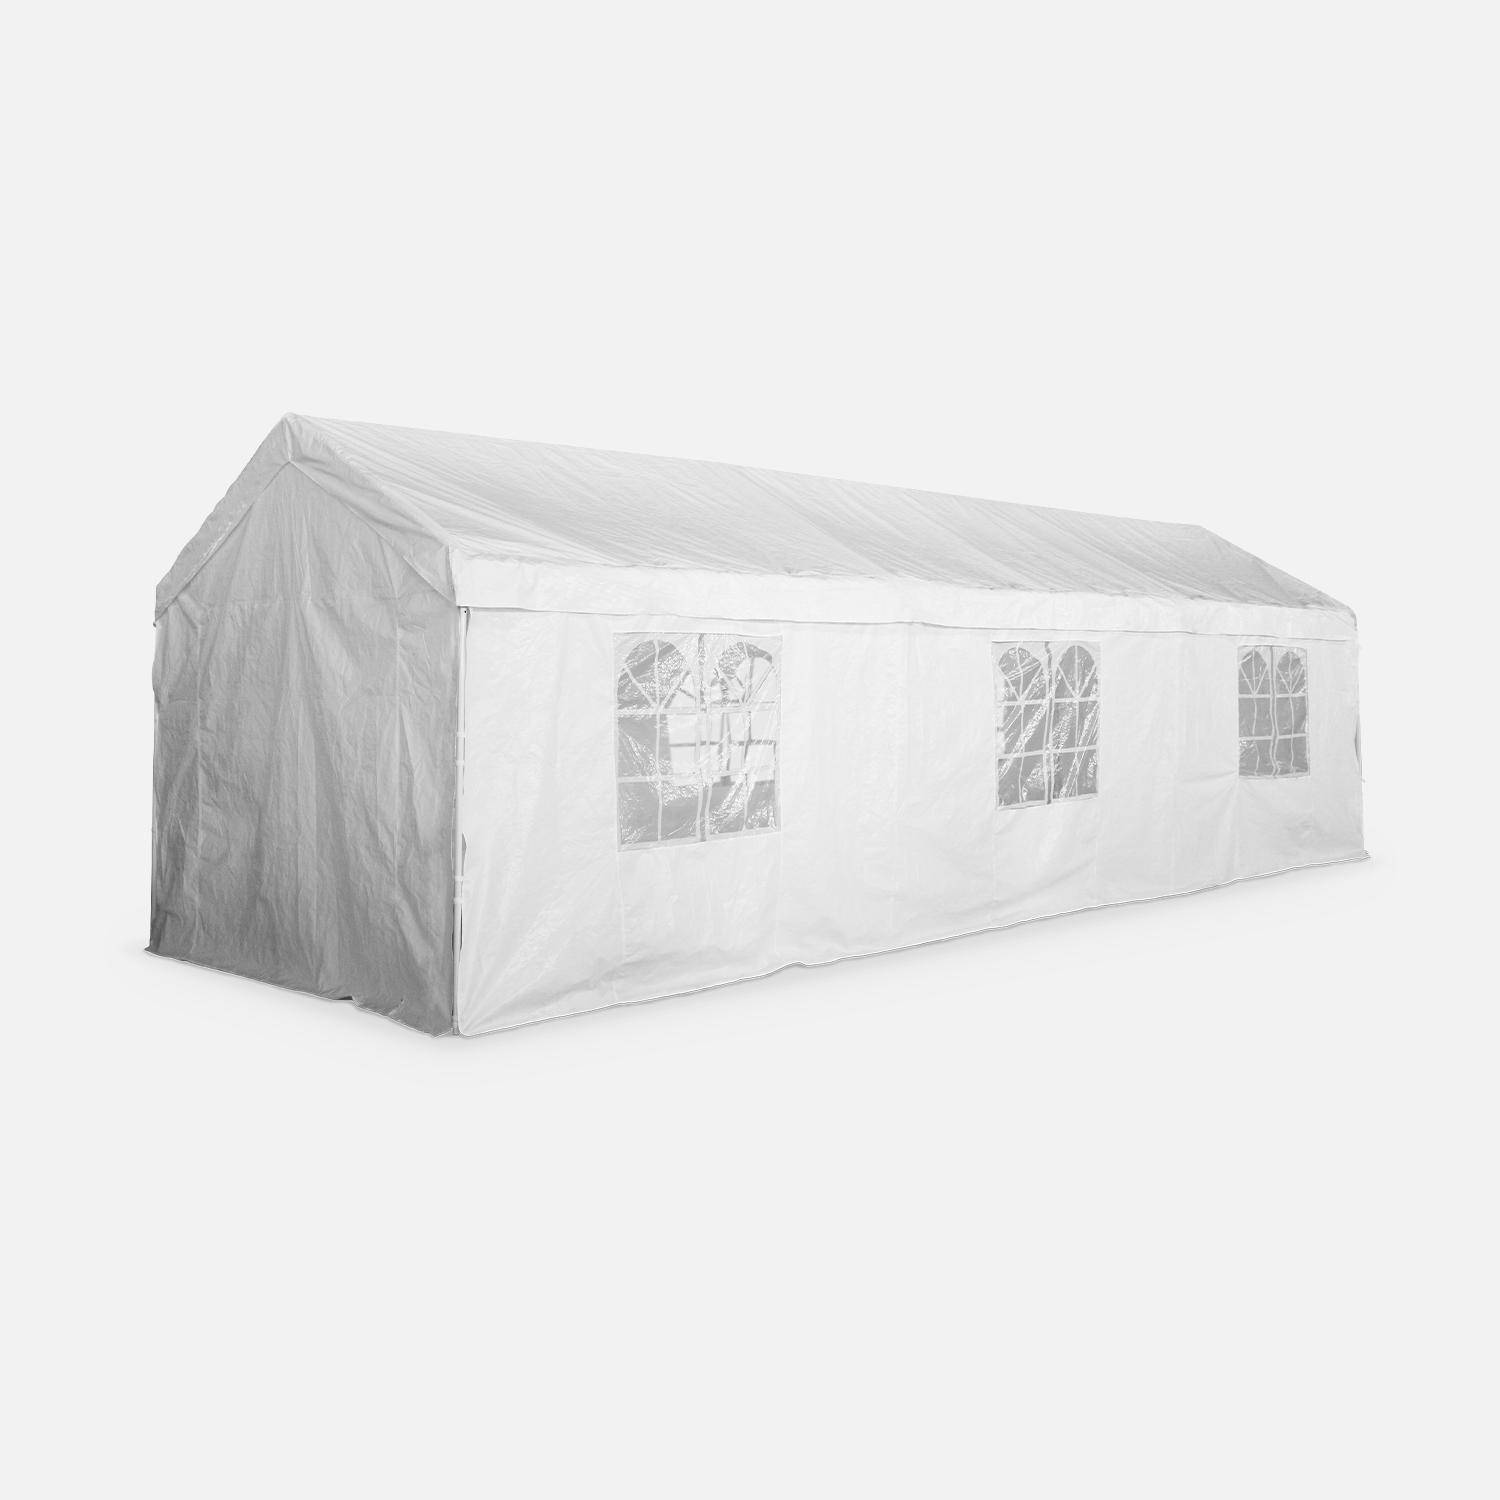 Tenda de festa - Burdigala 3x9m - Branca, conectores metálicos, tenda de jardim ideal para utilizar como pavilhão, pérgola, tenda ou caramanchão Photo2